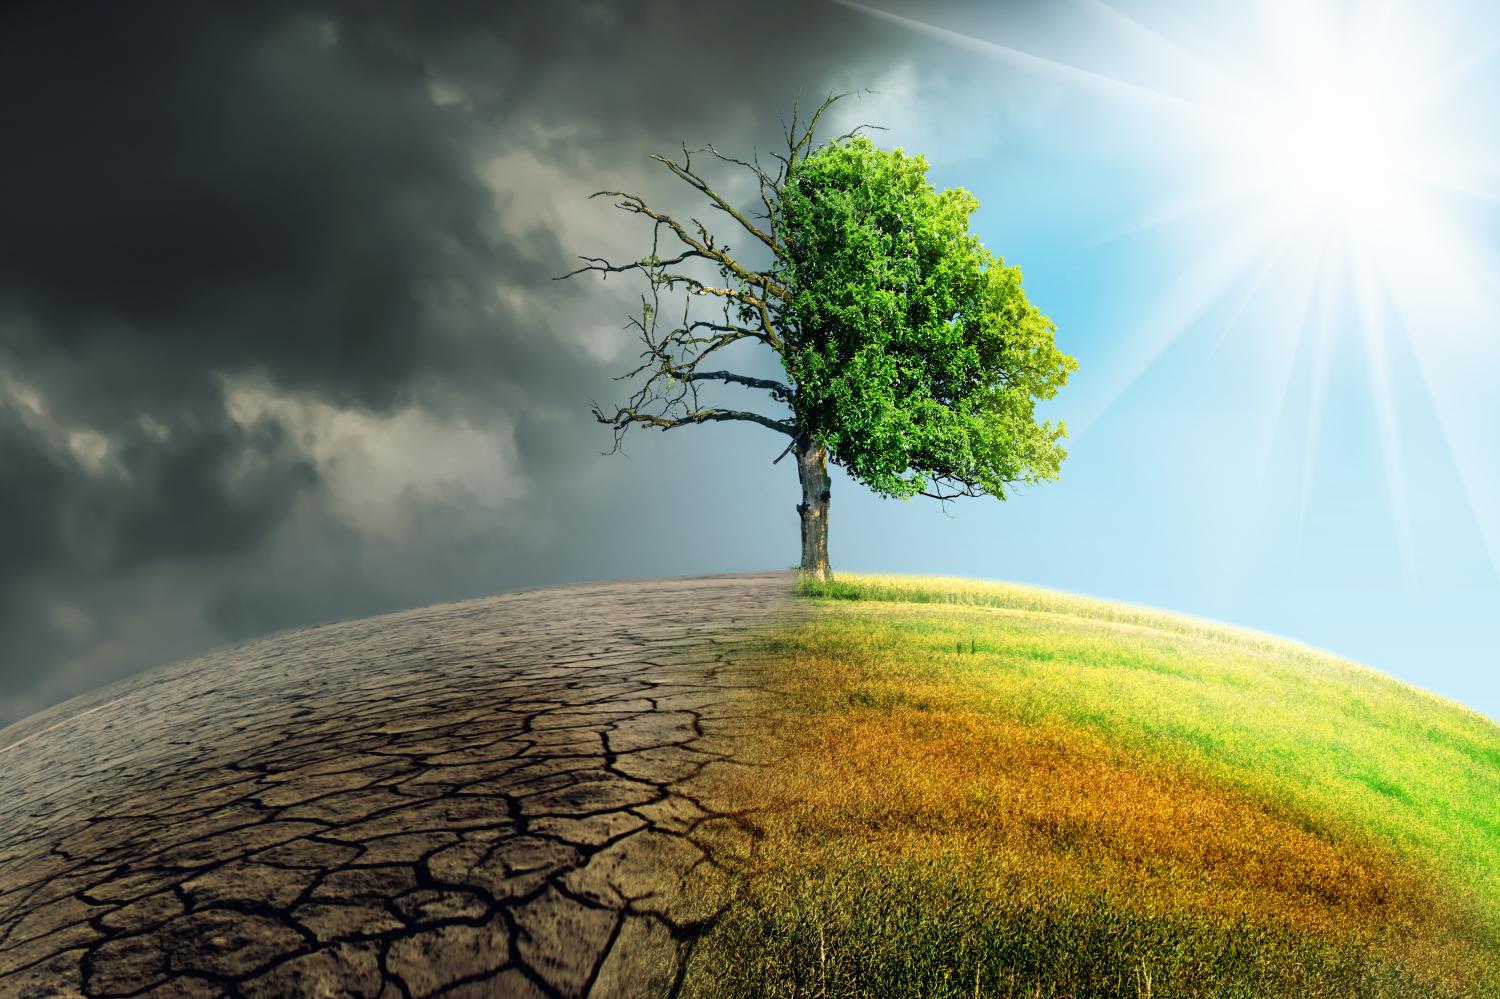 A barren or green climate scenario